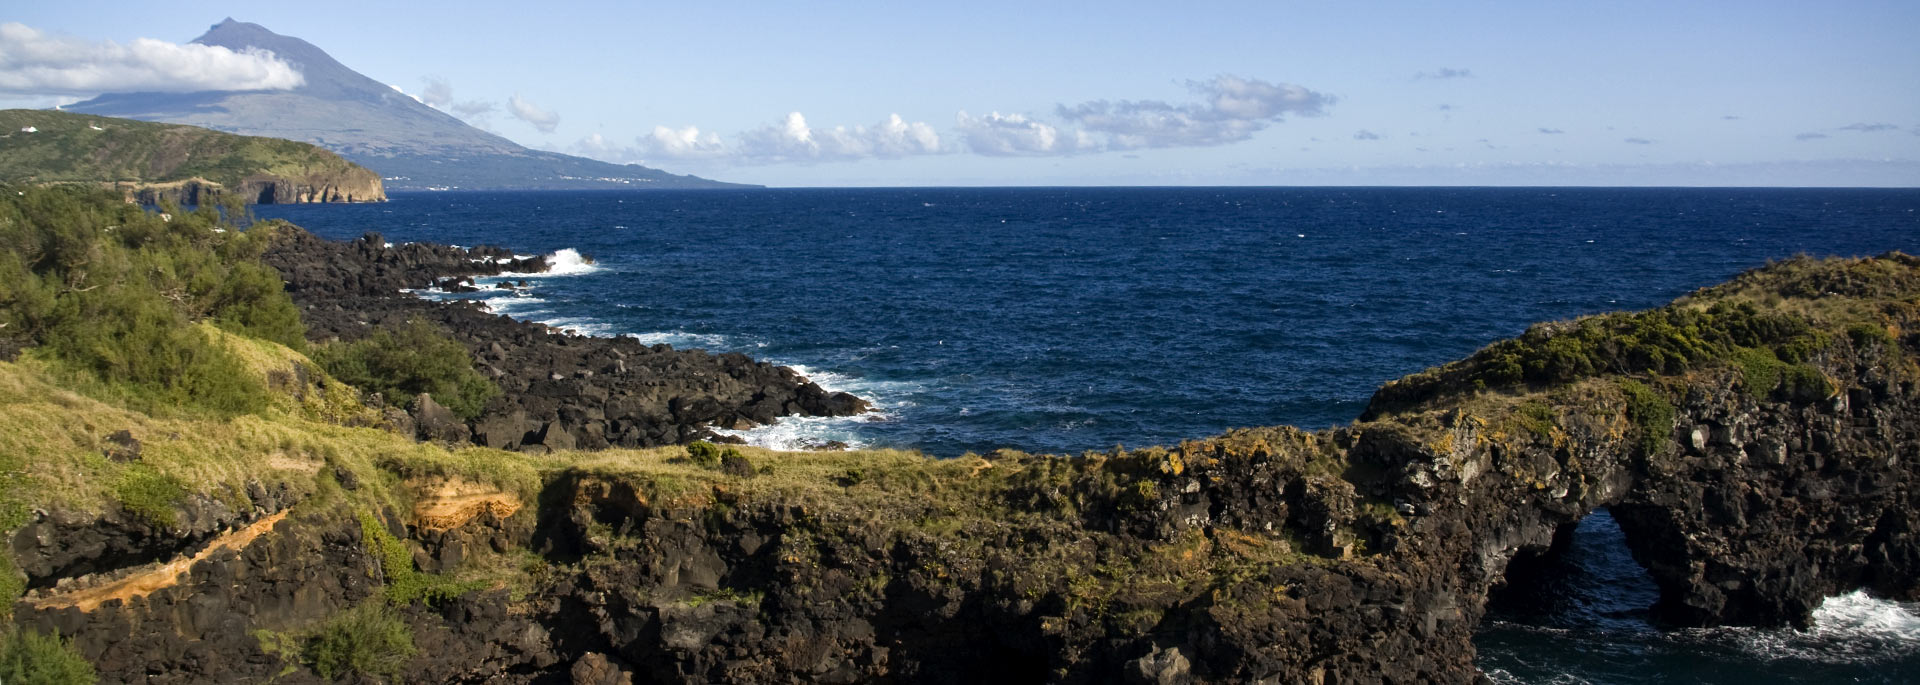 Fotos: Azoren-Insel Faial